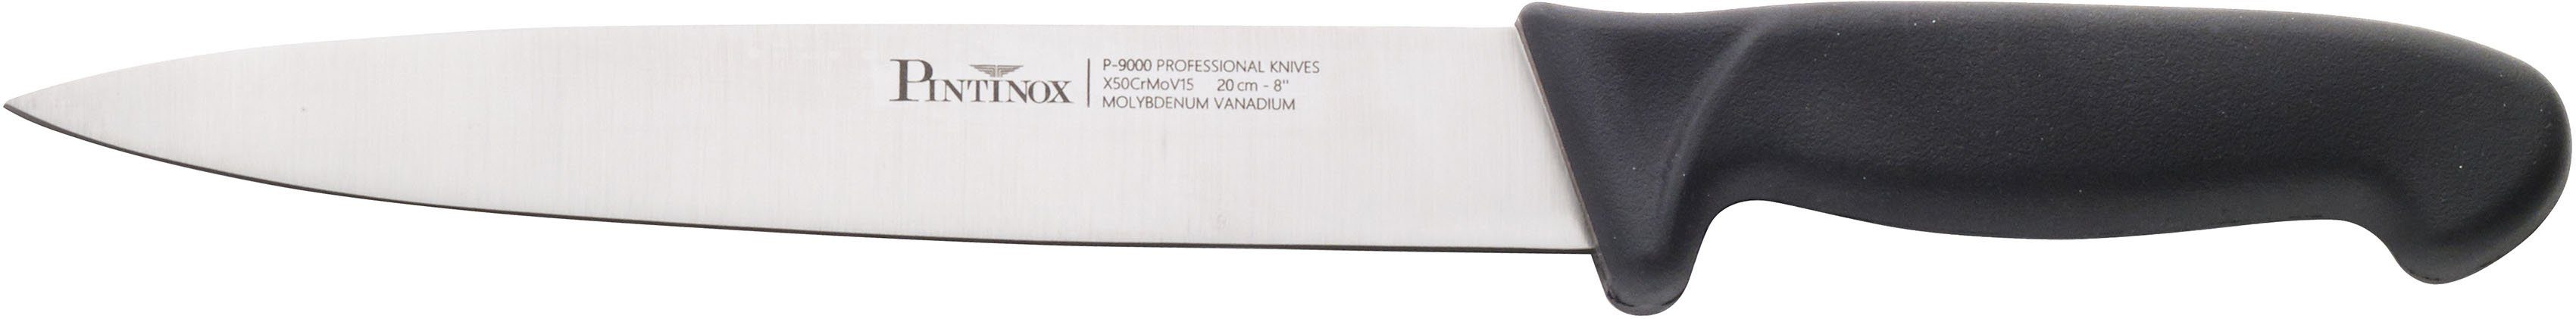 PINTINOX Allzweckmesser Coltelli P9000, Klingenlänge 20 Kunststoff, Edelstahl rutschfestem cm mit